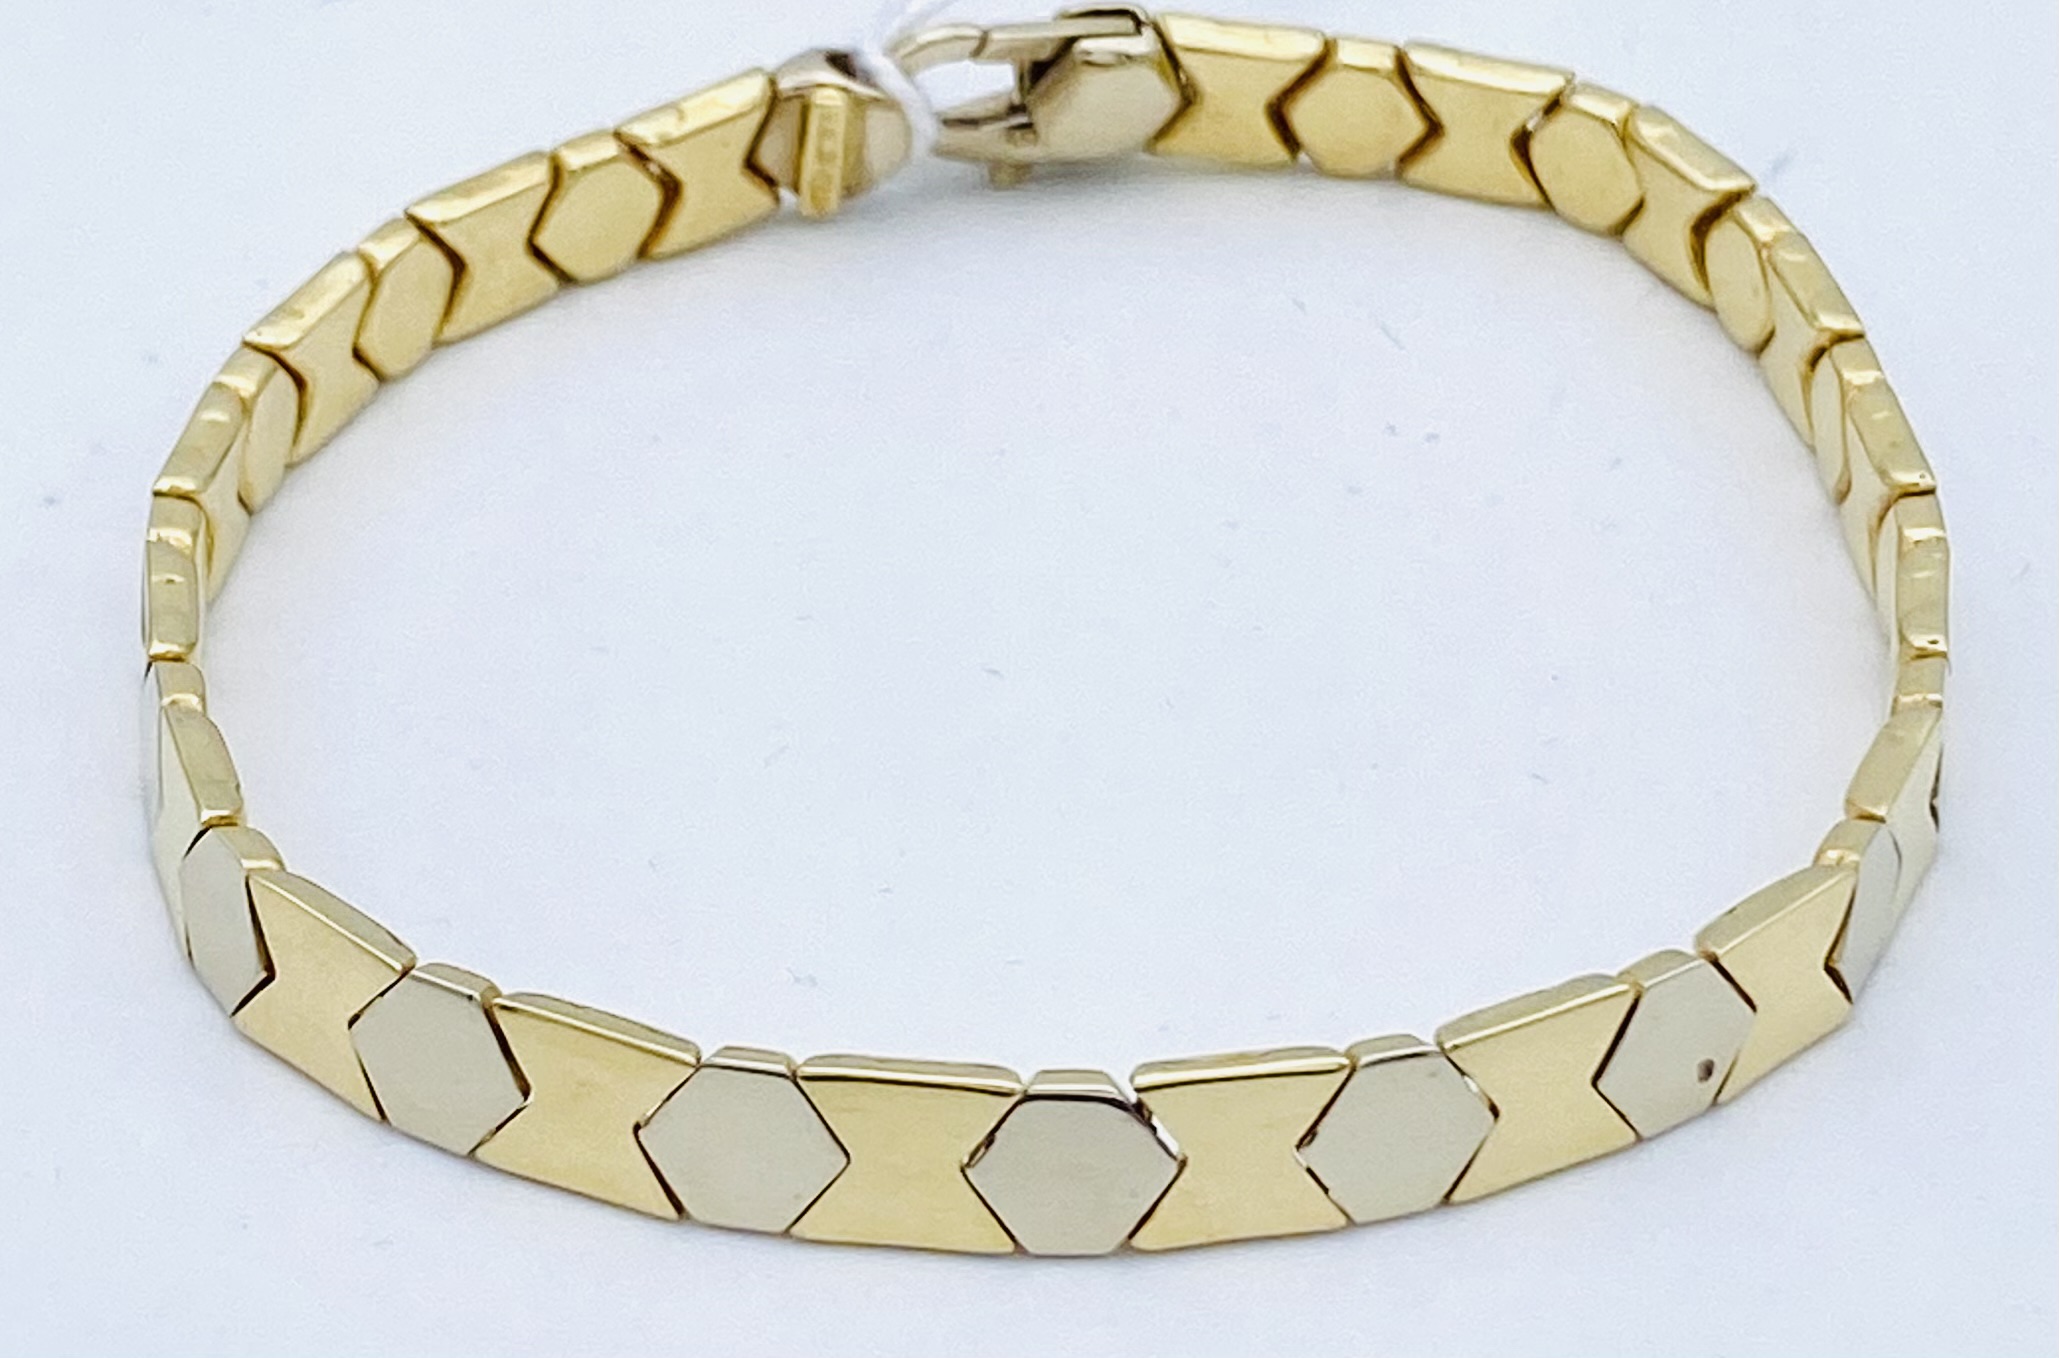 Men's bracelet yellow gold,white 750% GR. 17,20 ART. BRUC02